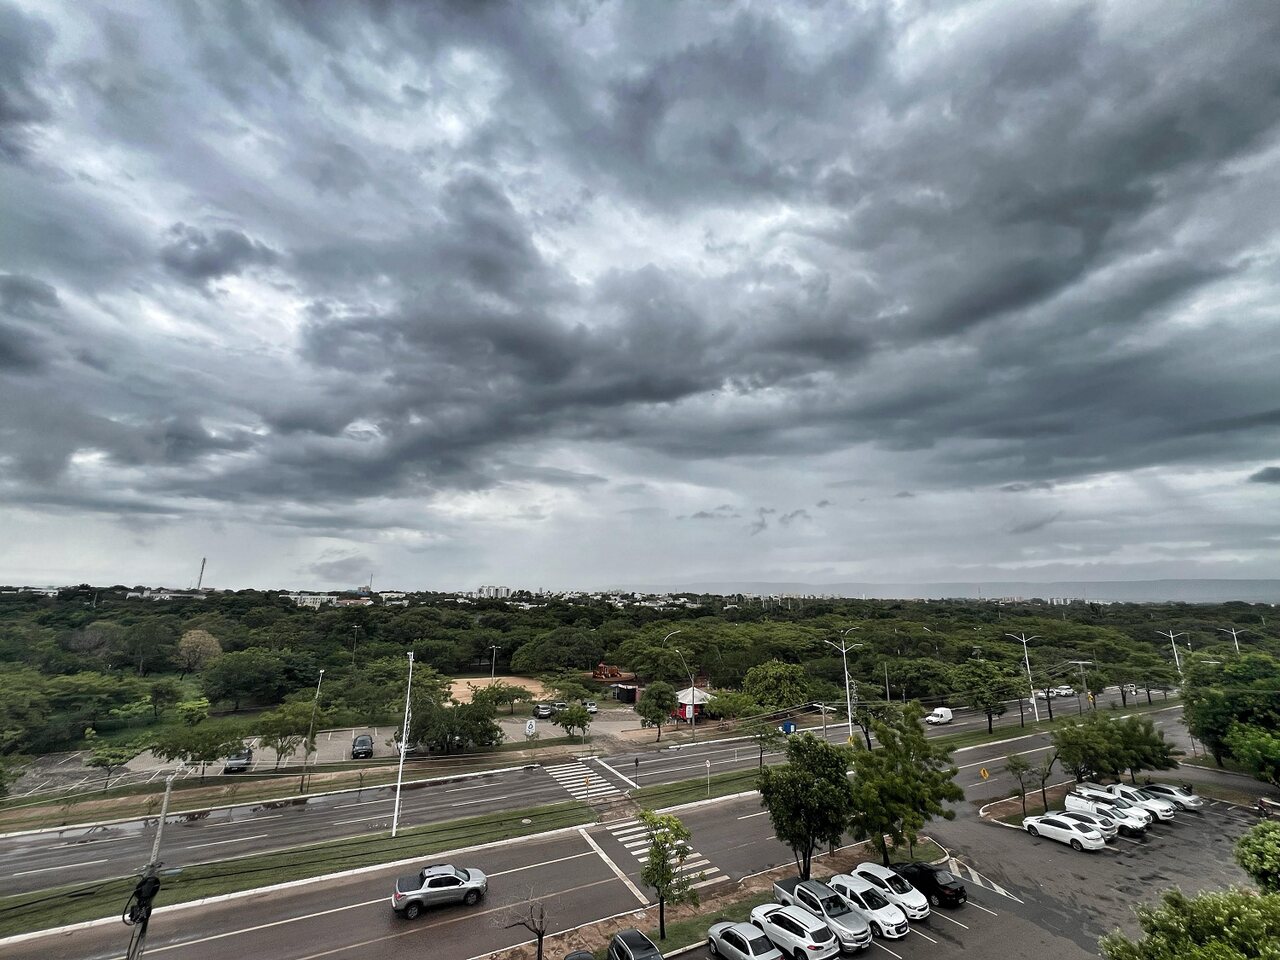 Atenção redobrada! Tocantins tem previsão de chuva intensa e ventos de até 60km/h durante todo o fim de semana